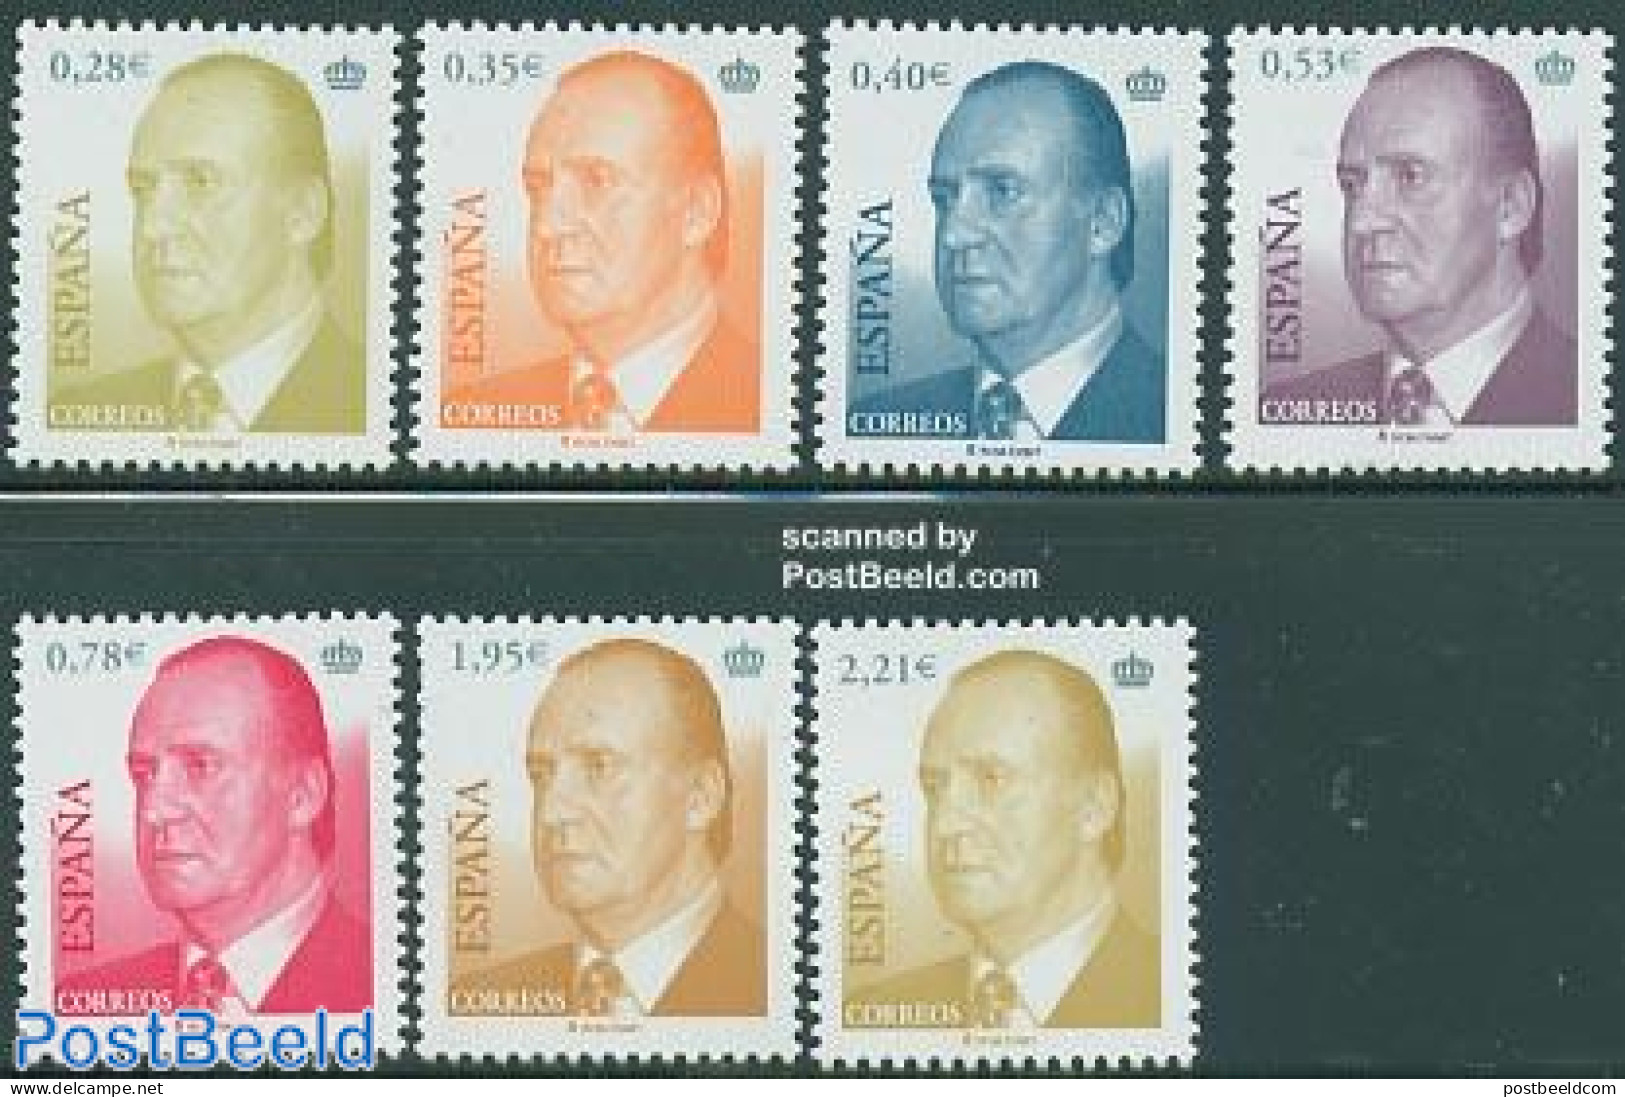 Spain 2005 Definitives 7v, Mint NH - Unused Stamps